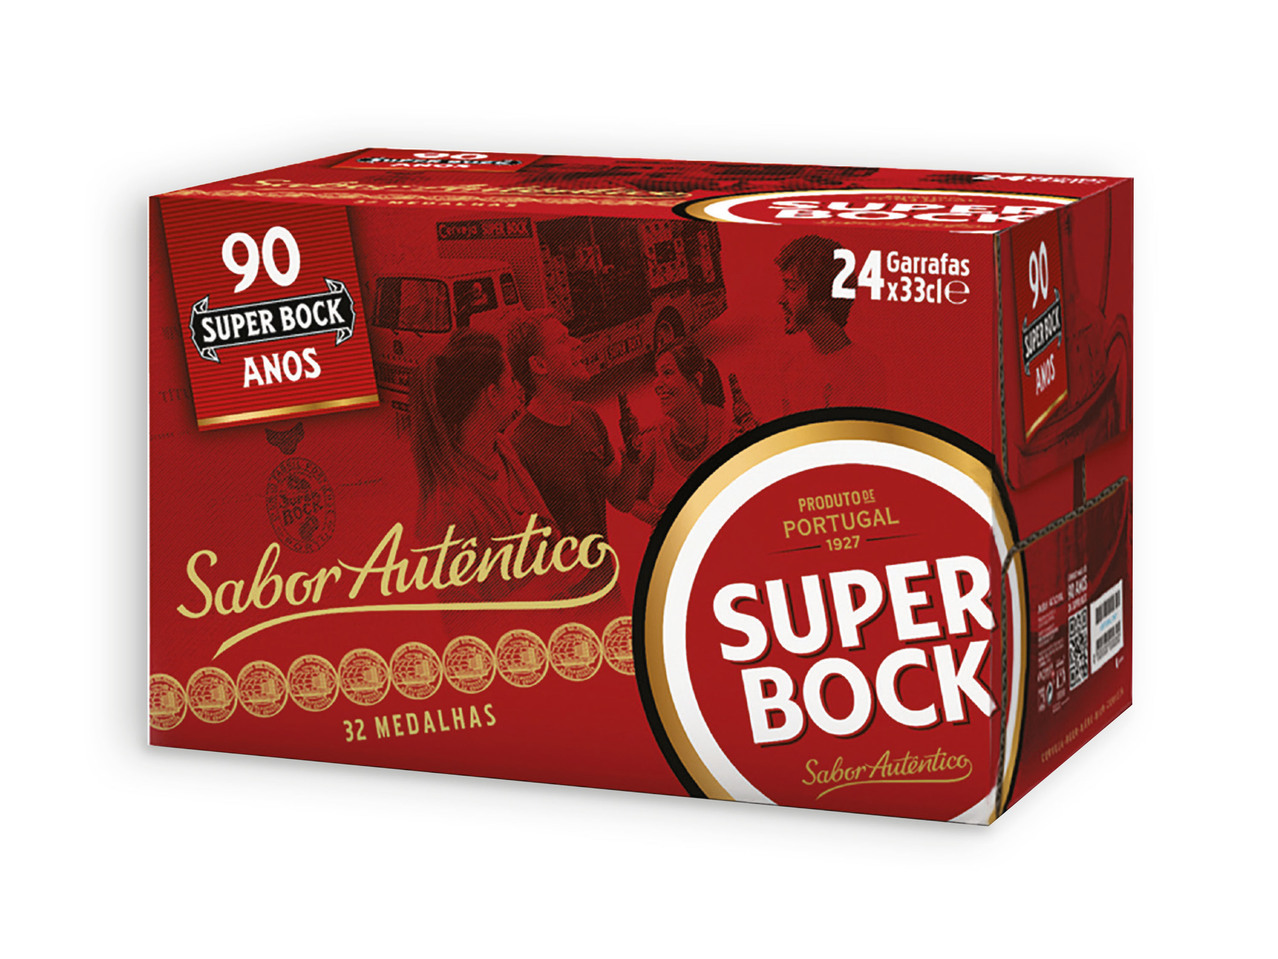 SUPER BOCK(R) Cerveja Pack Económico